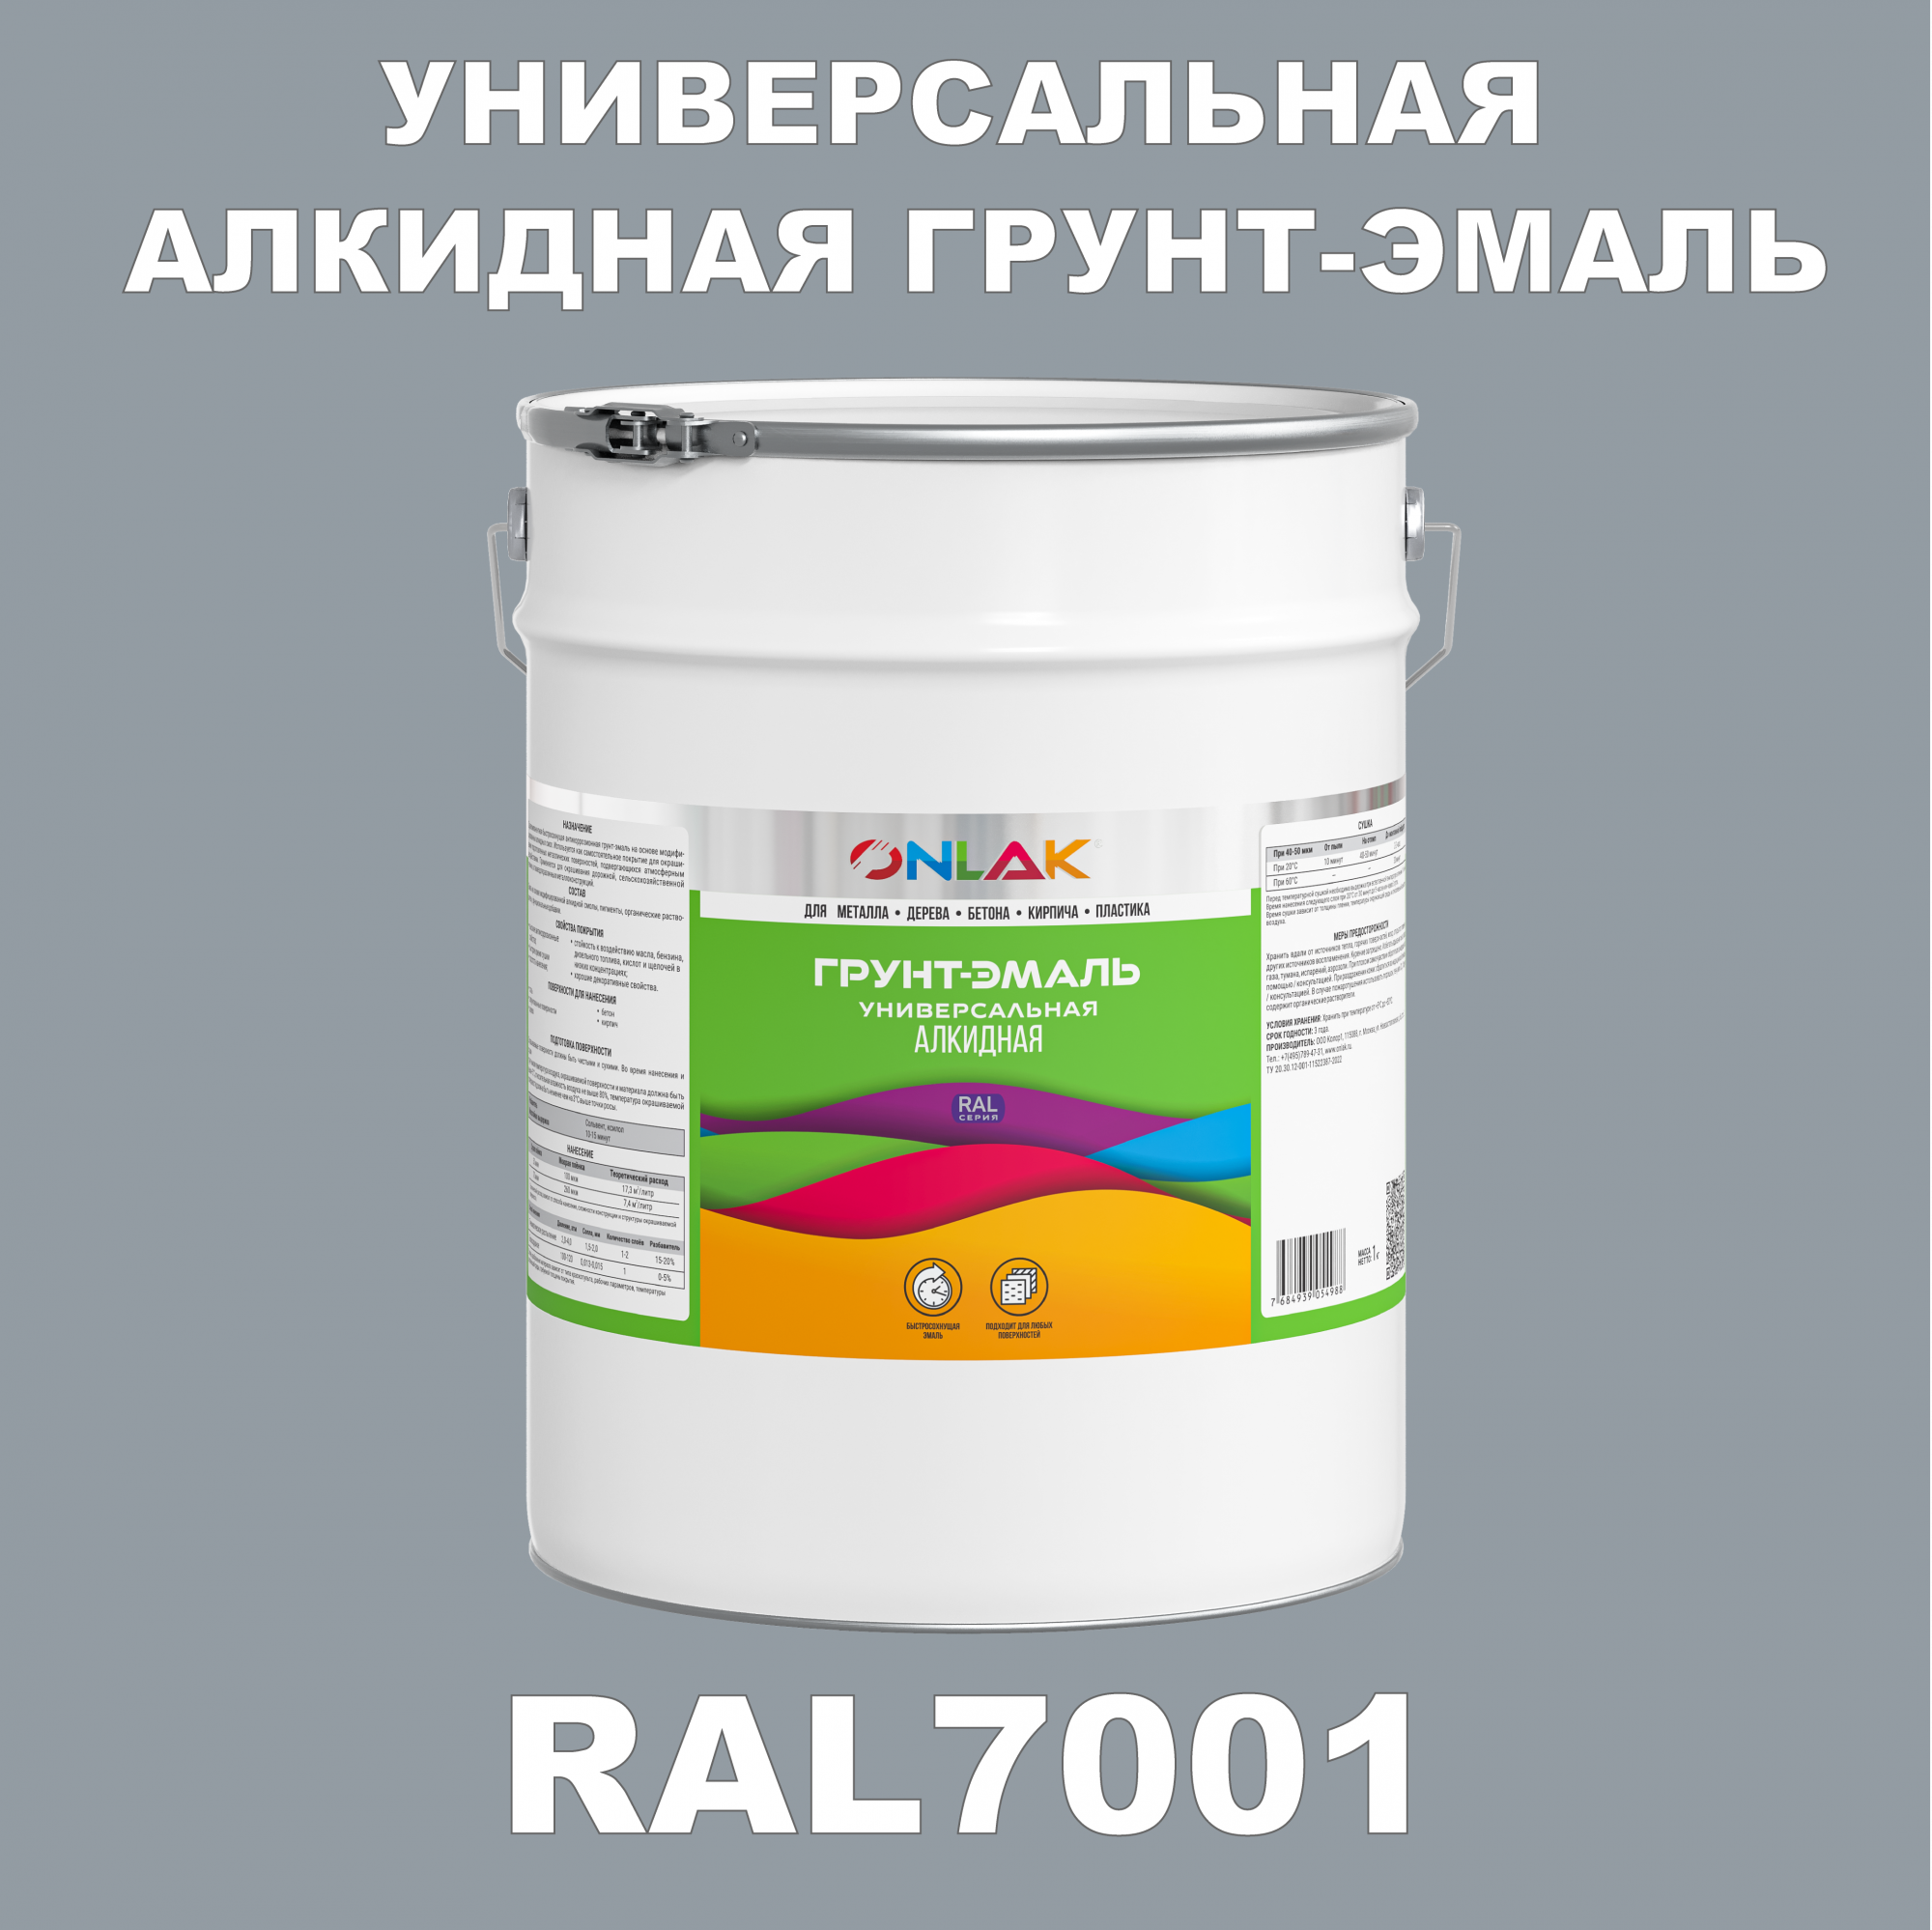 Грунт-эмаль ONLAK 1К RAL7001 антикоррозионная алкидная по металлу по ржавчине 20 кг грунт эмаль аэрозольная престиж 3в1 алкидная коричневая ral 8017 425 мл 0 425 кг